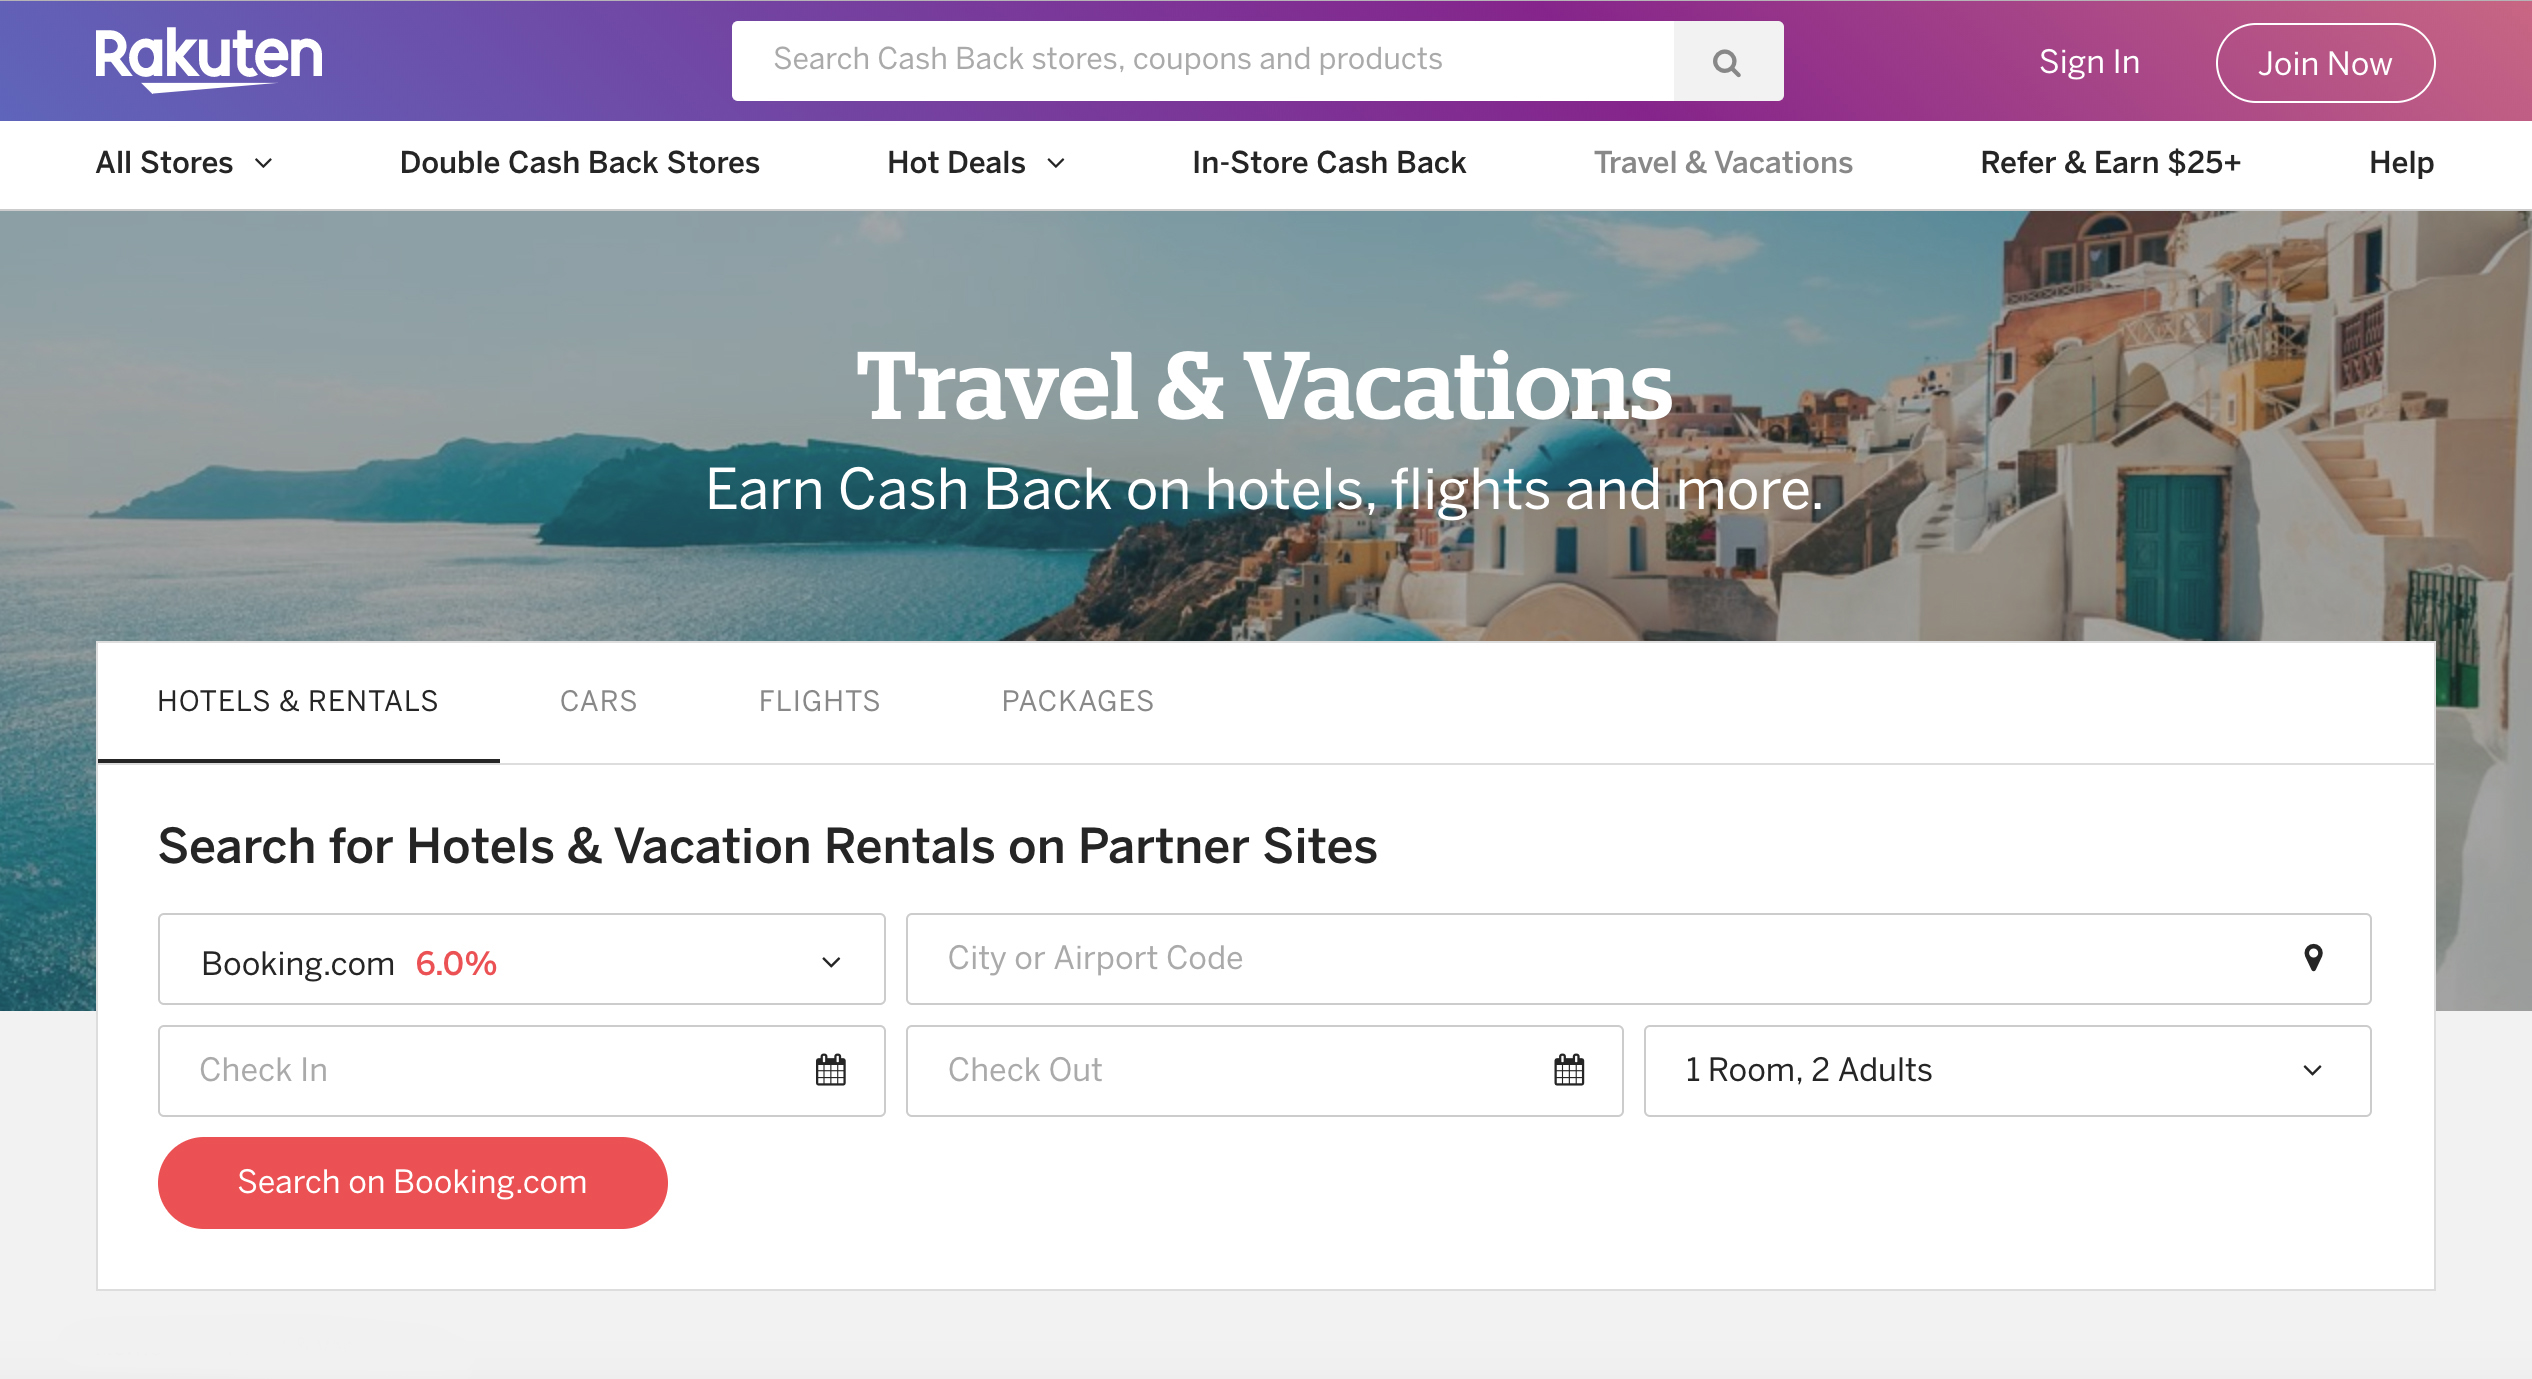 Rakuten Travel & Vacations homepage